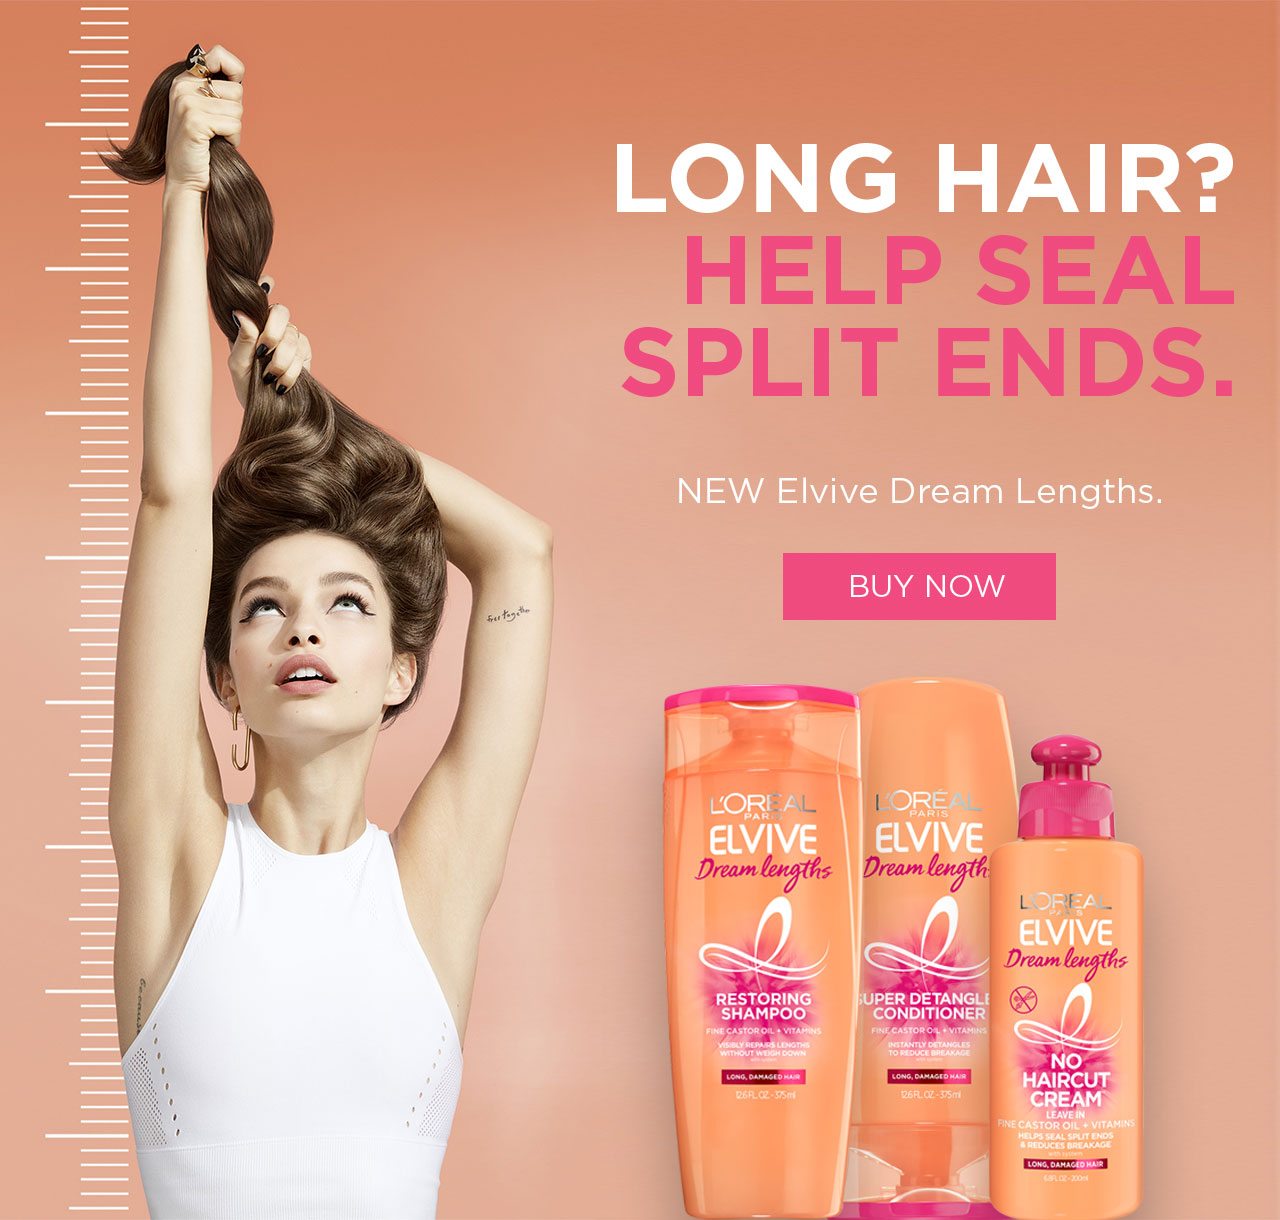 Long Hair? Help Seal Split Ends - Buy Now